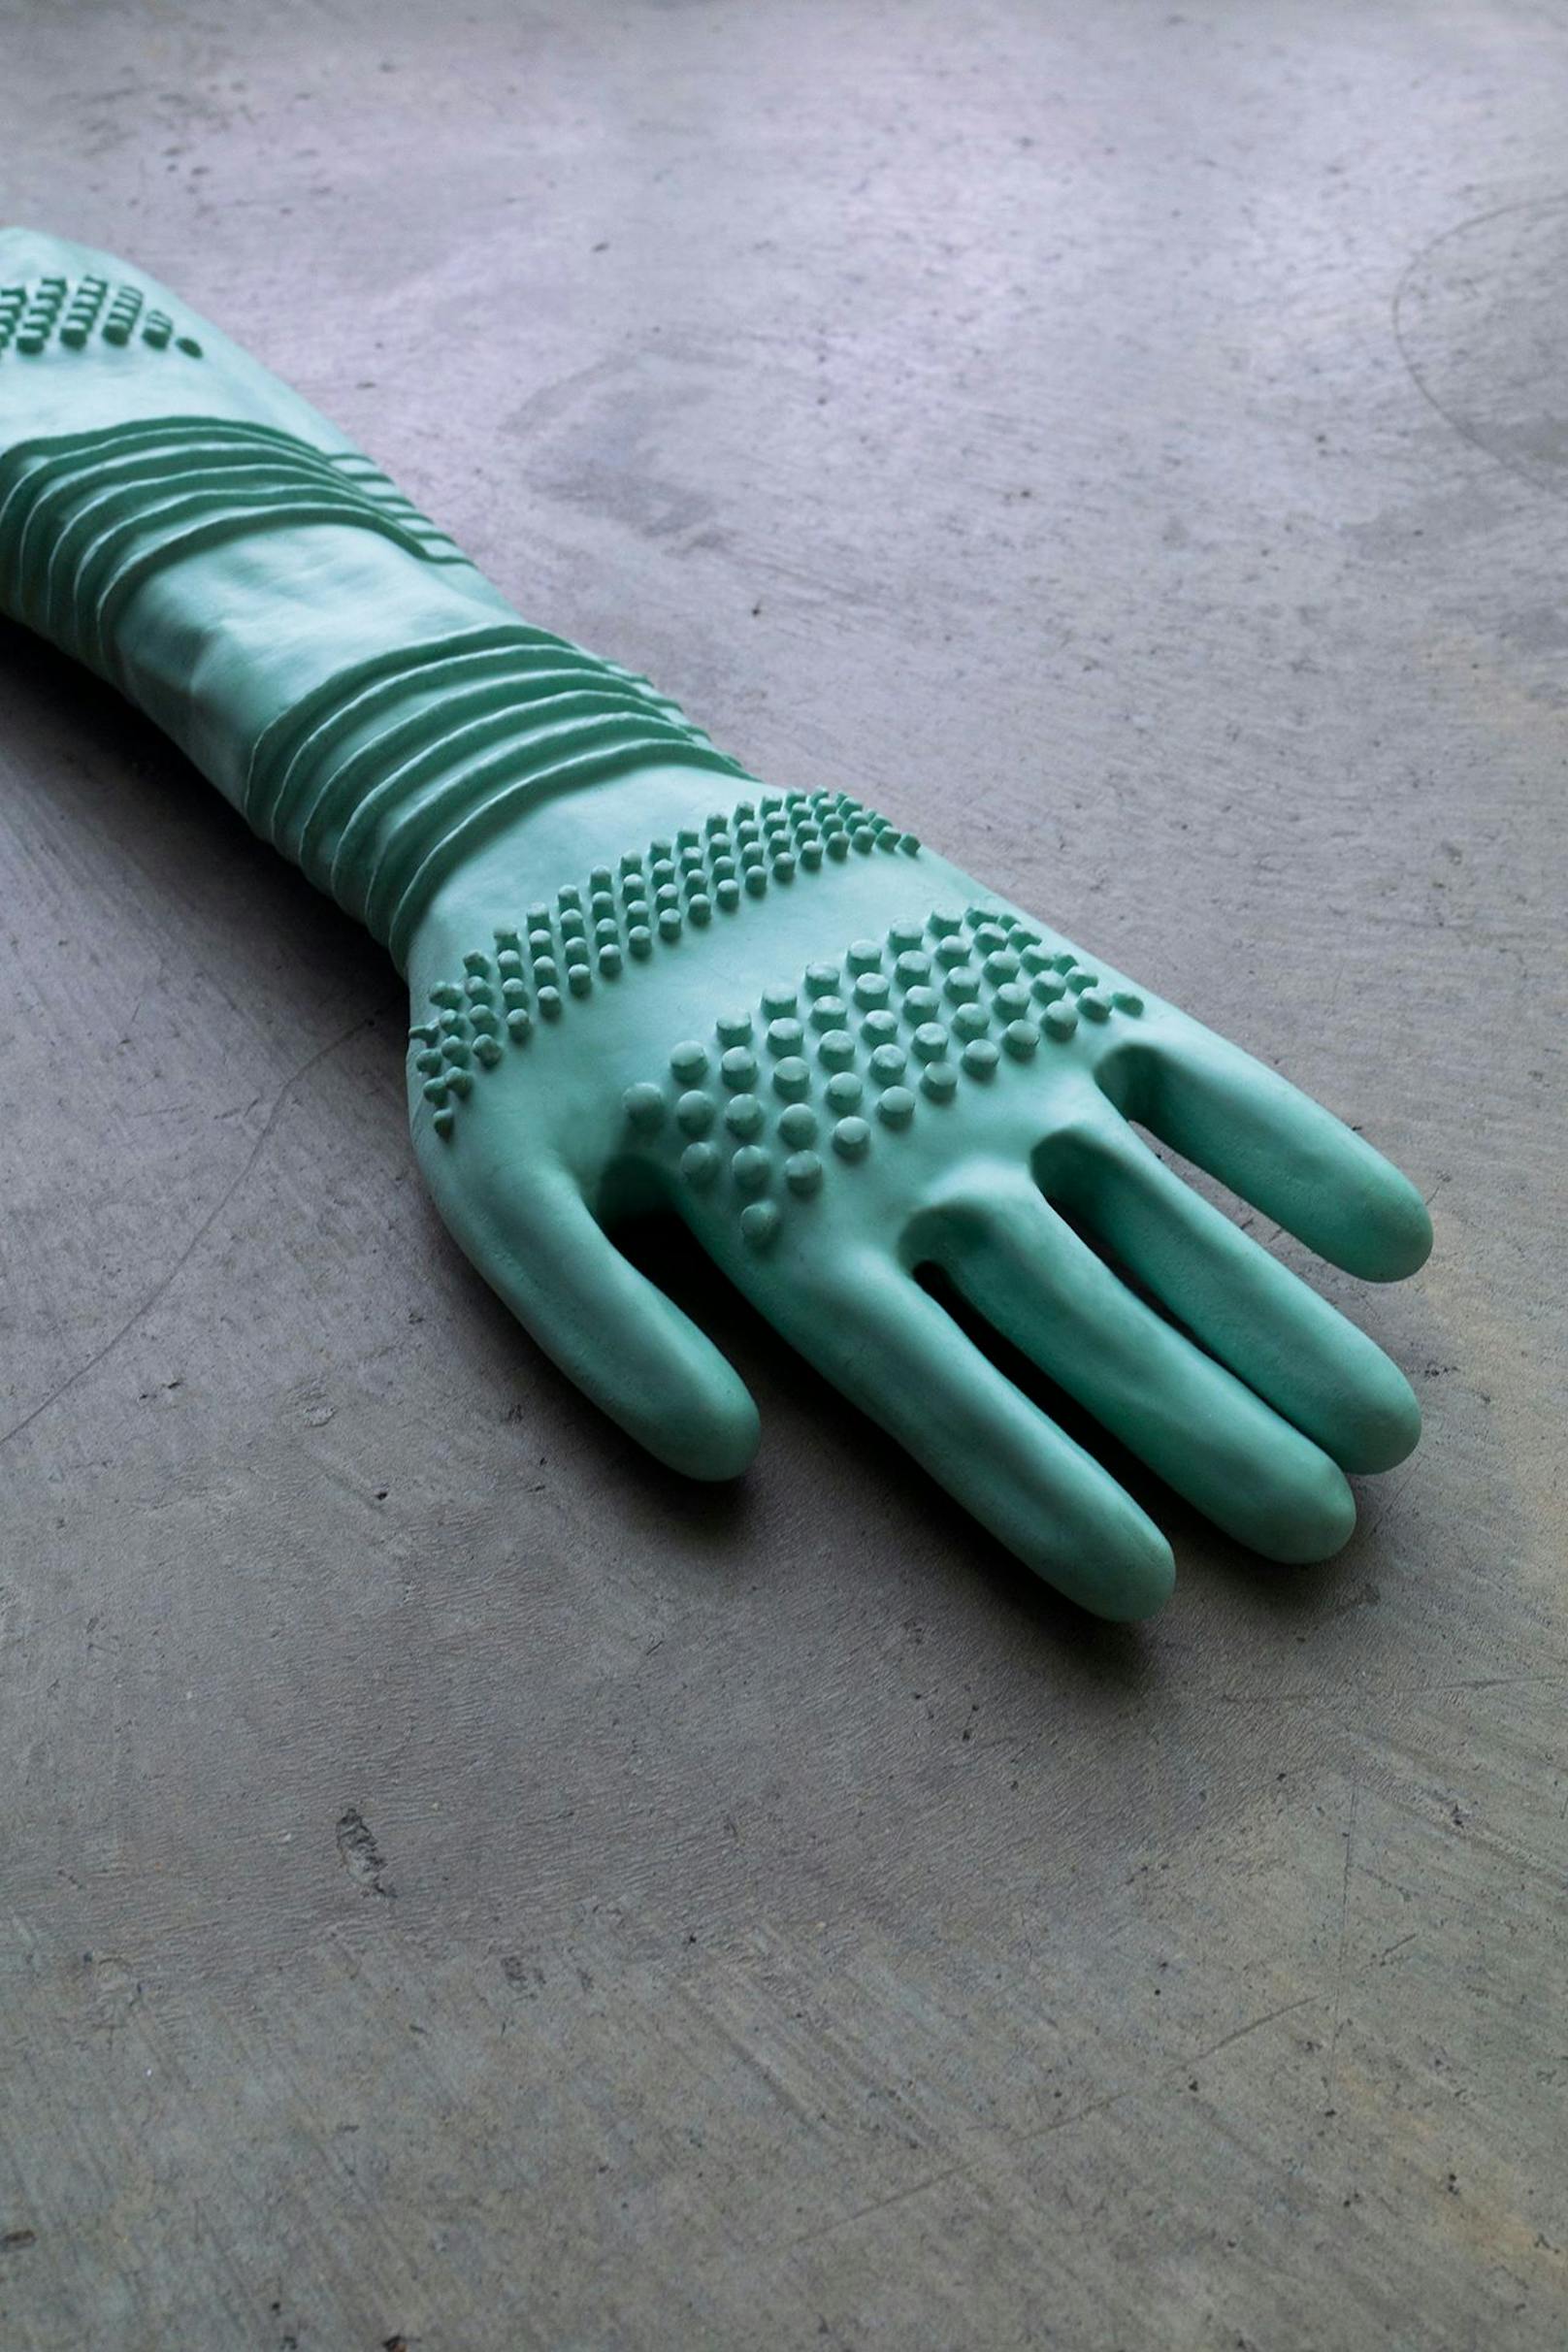 Ein genoppter Handschuh für medizinische Untersuchungen durch Tierärztinnen oder Tierärzte.